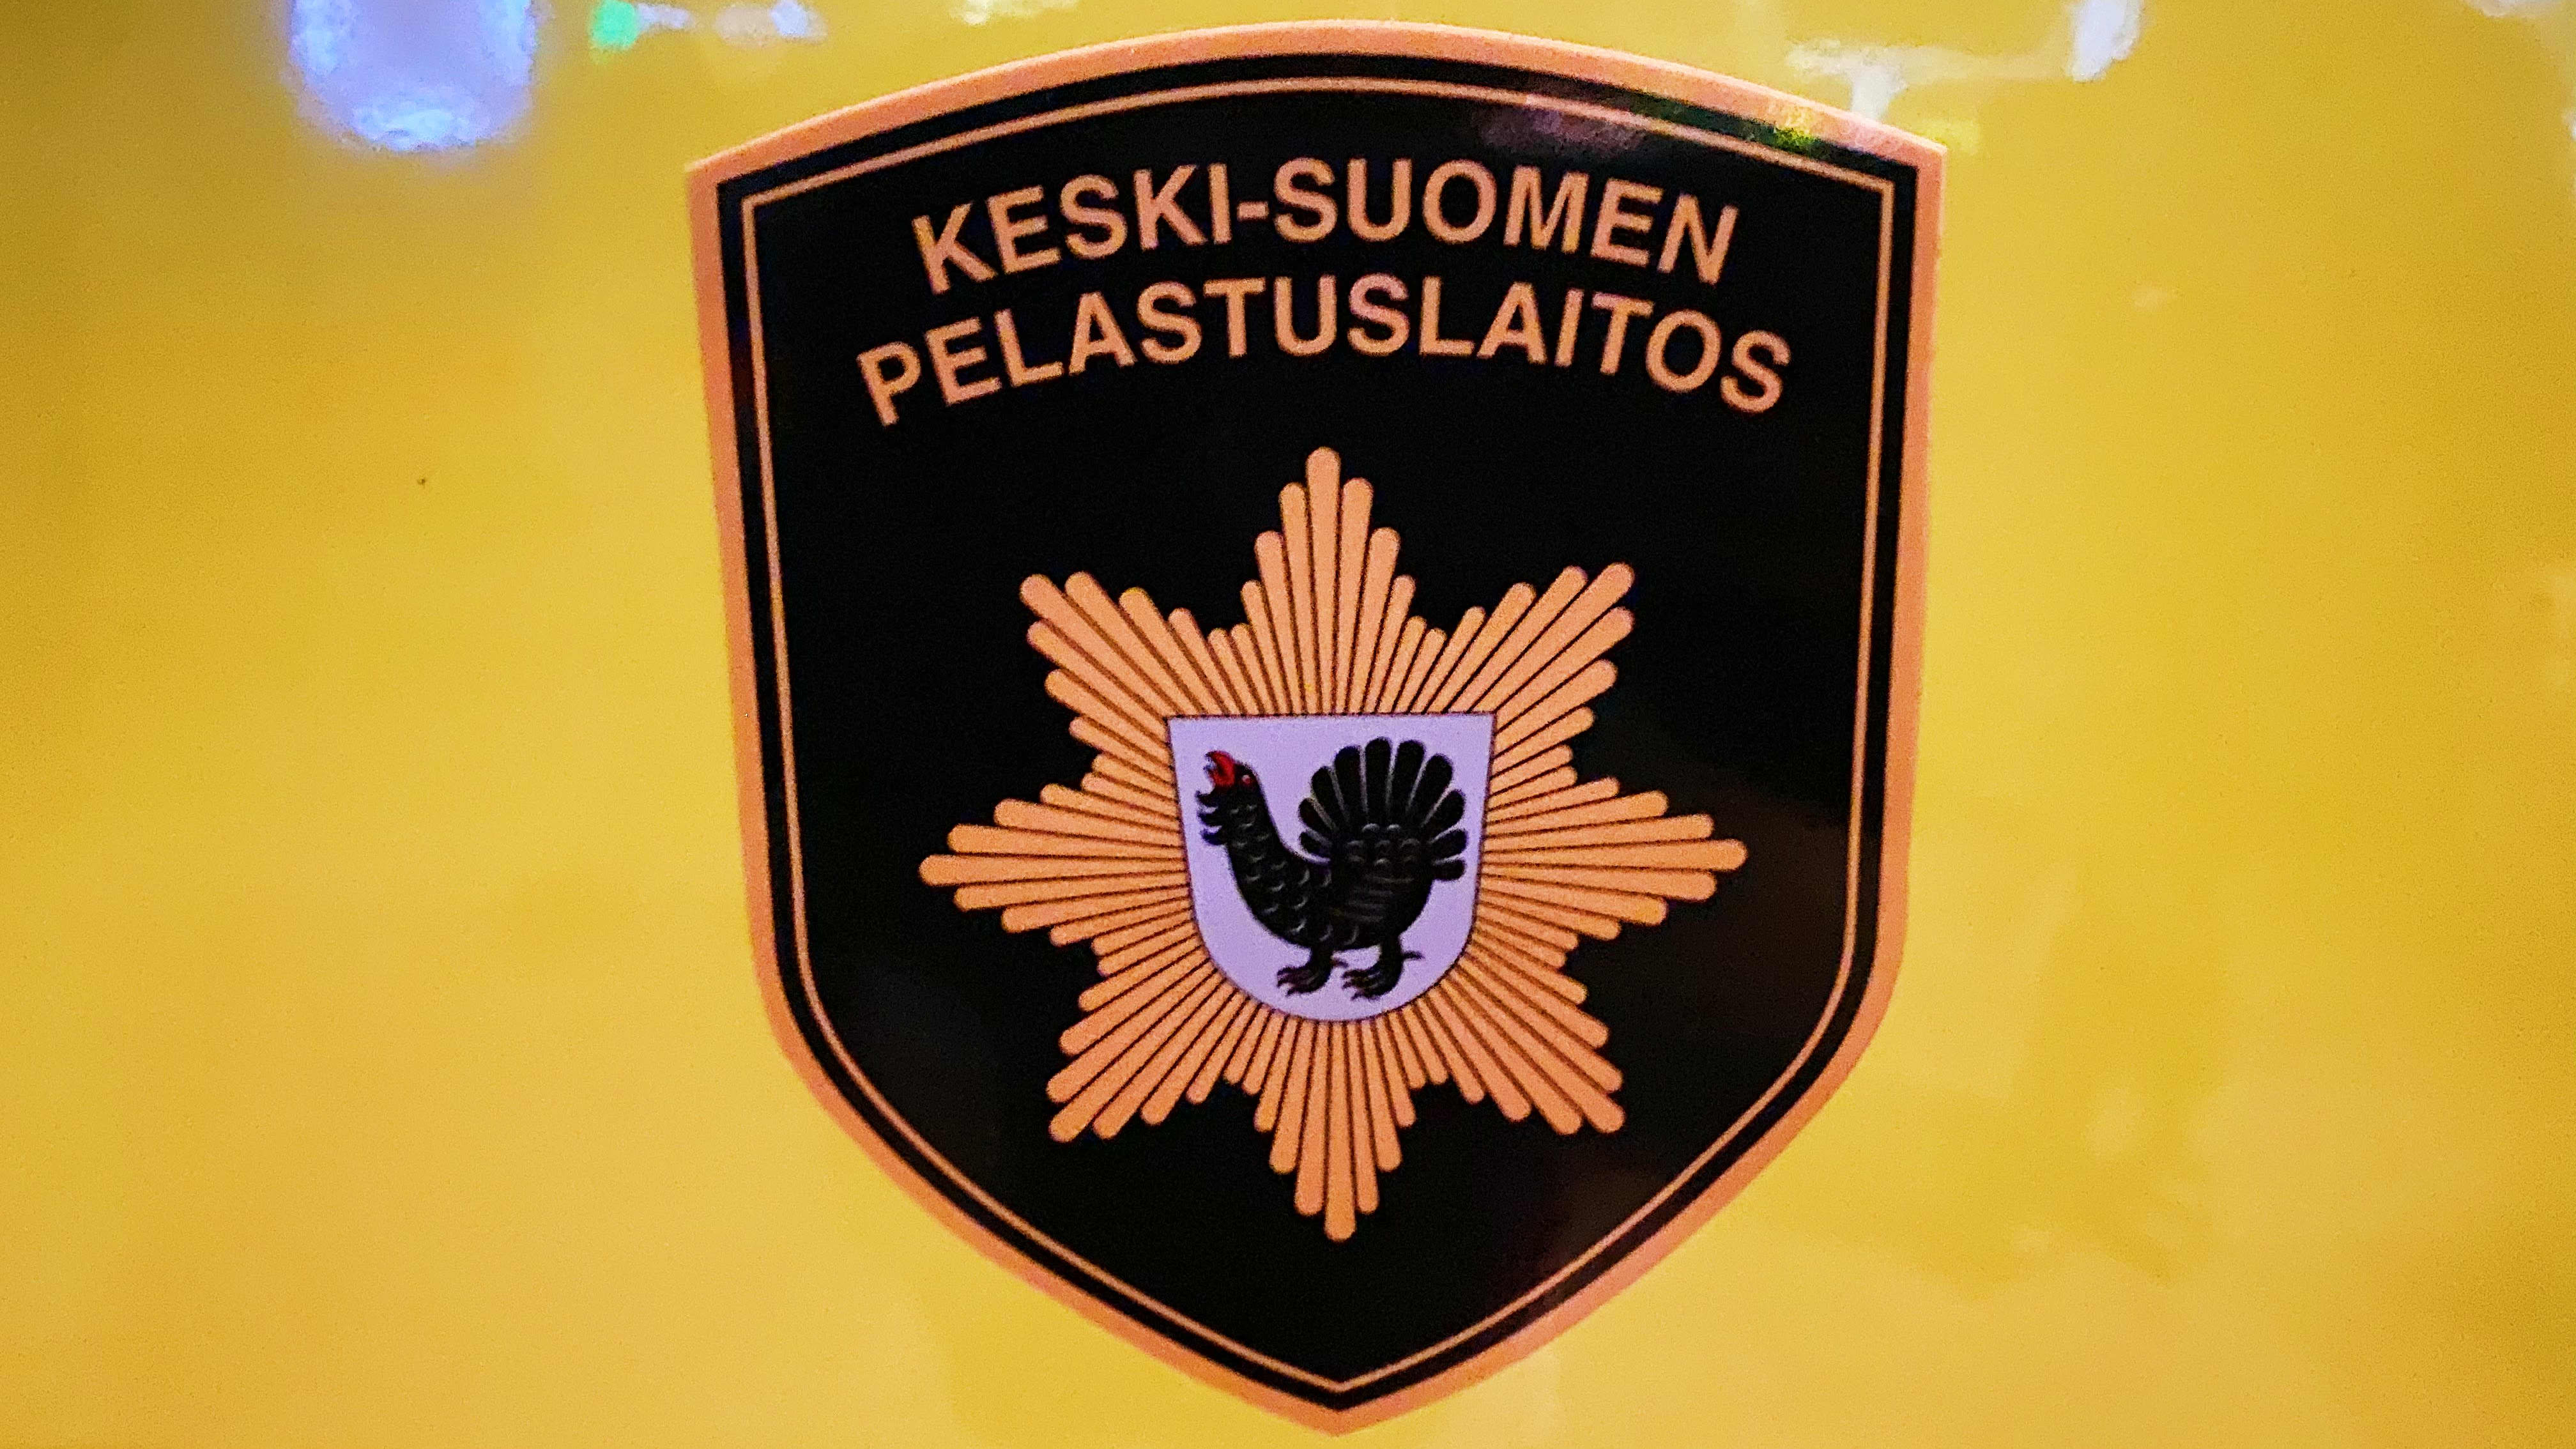 Keski-Suomen pelastuslaitoksen tunnus ambulanssin kyljessä.